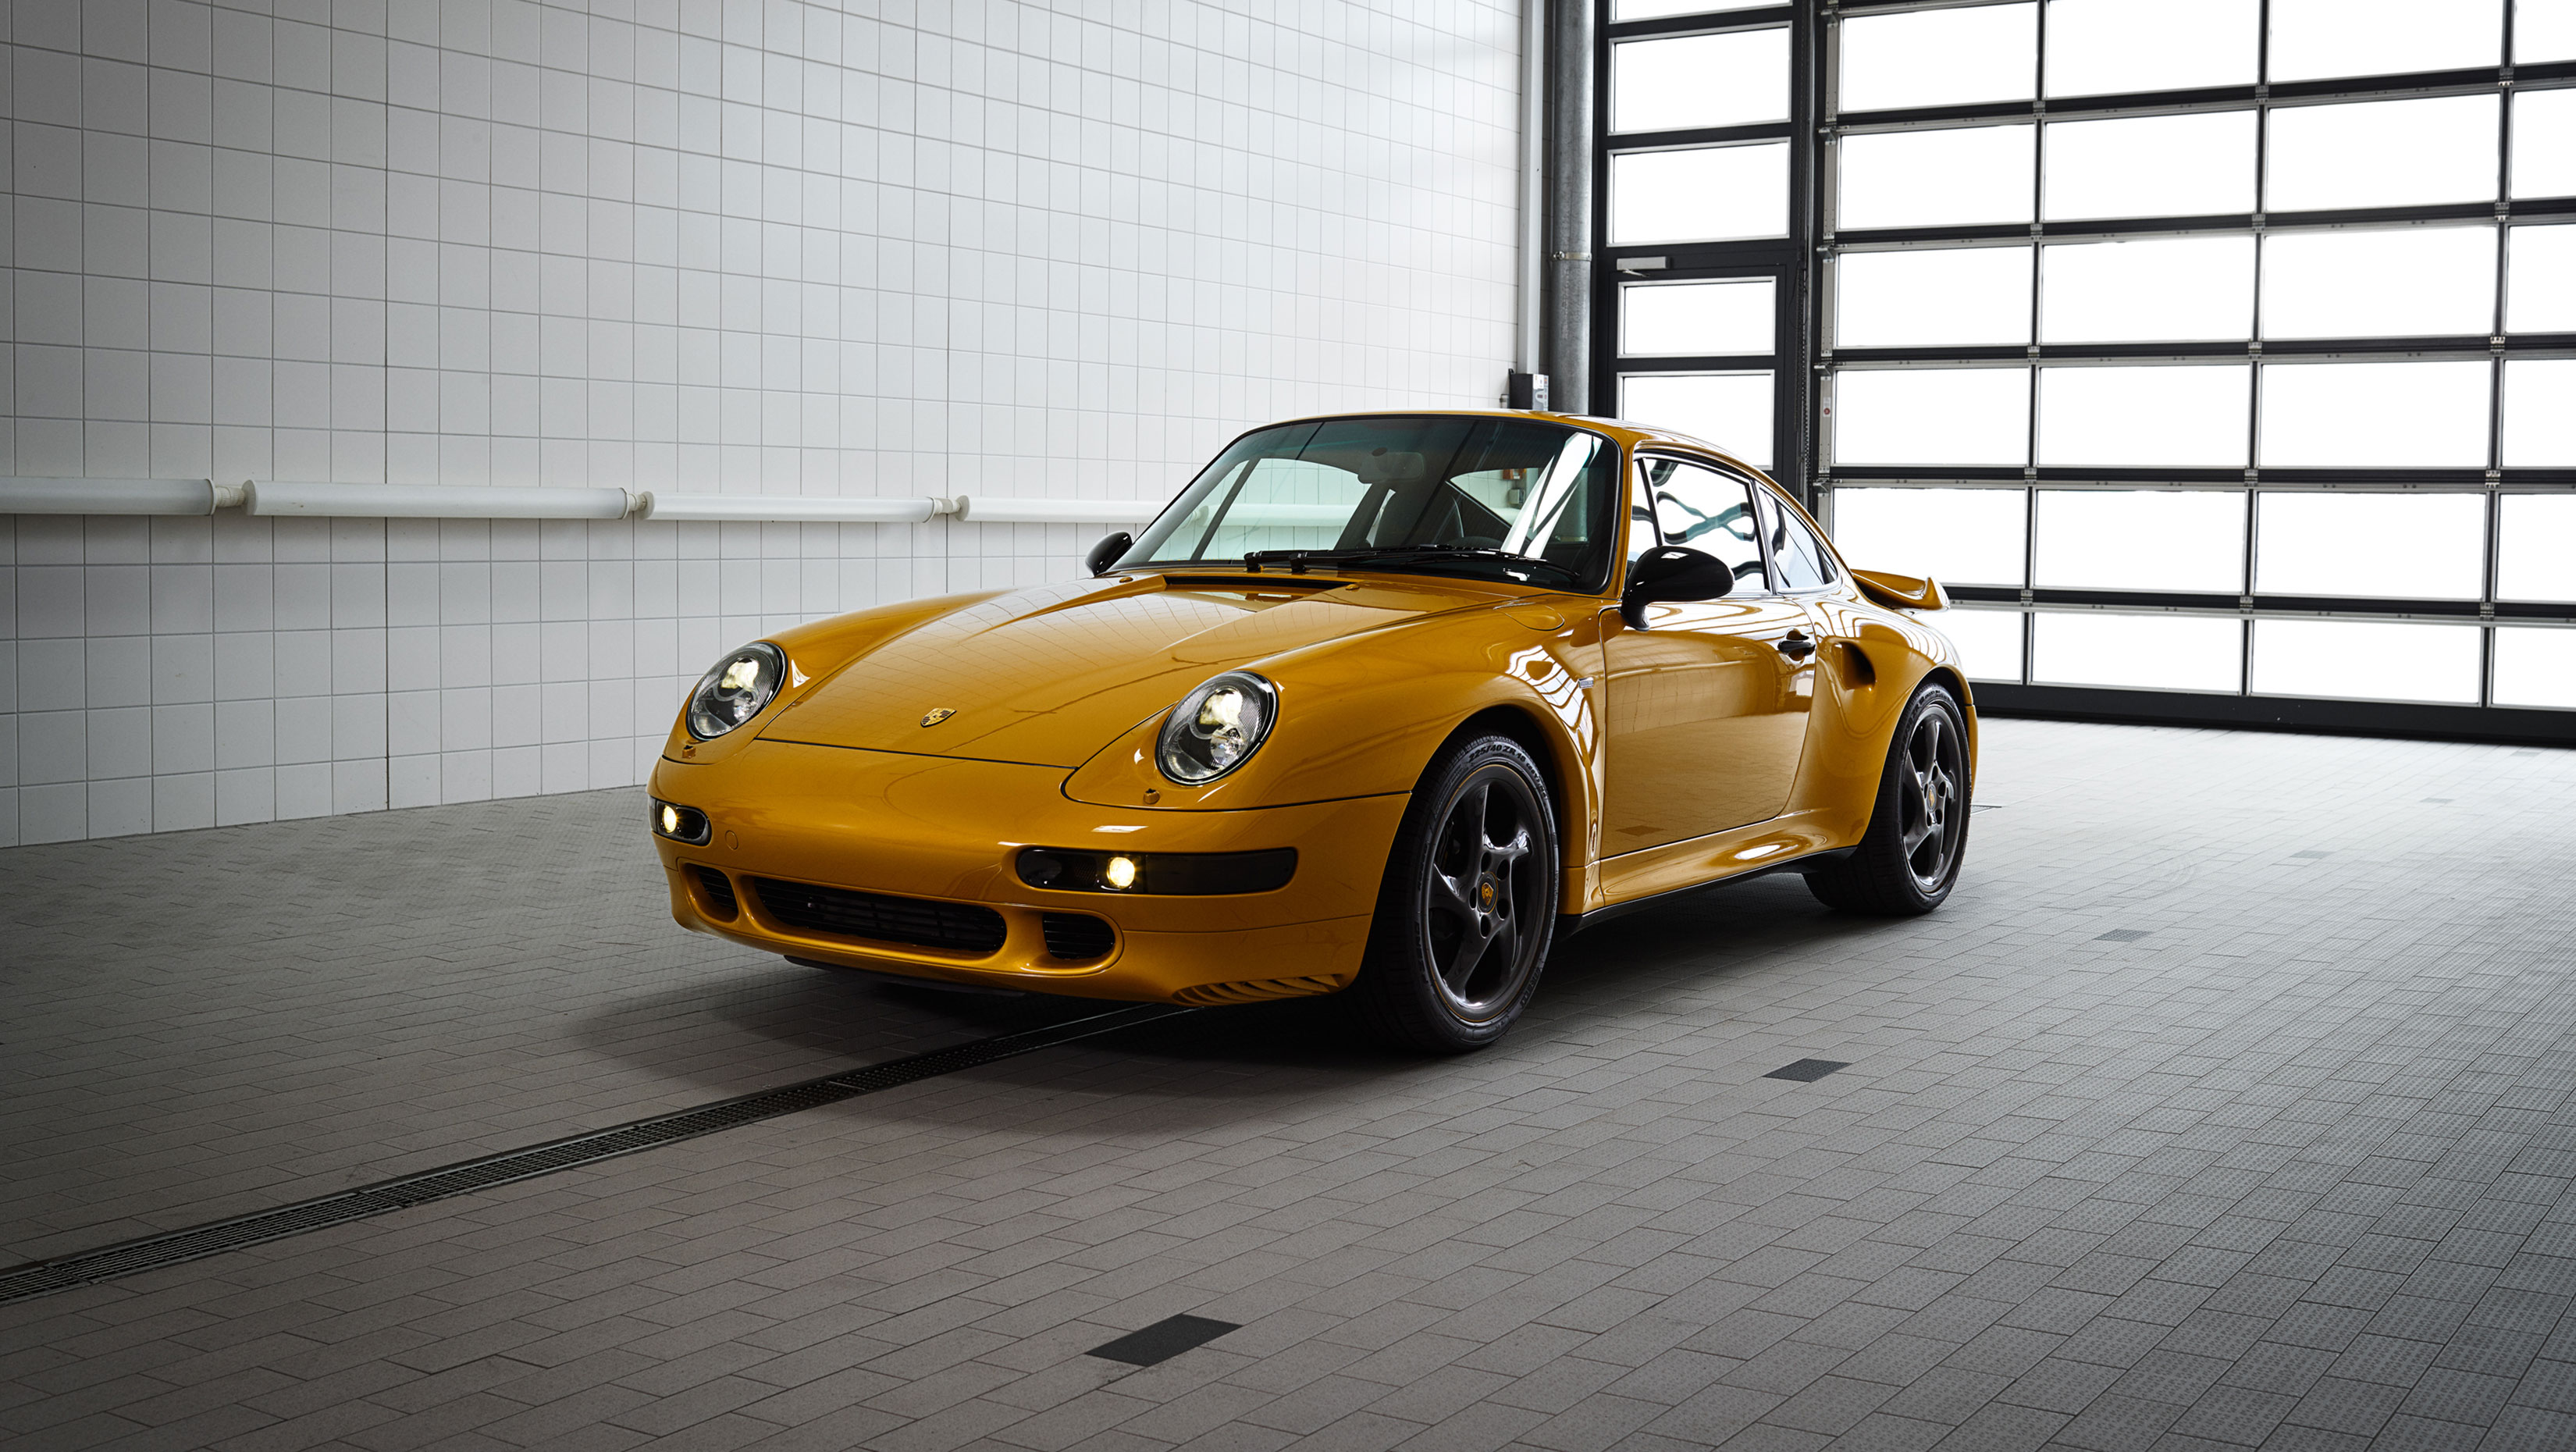 For Sale: A Porsche 911 2.7 Project Car